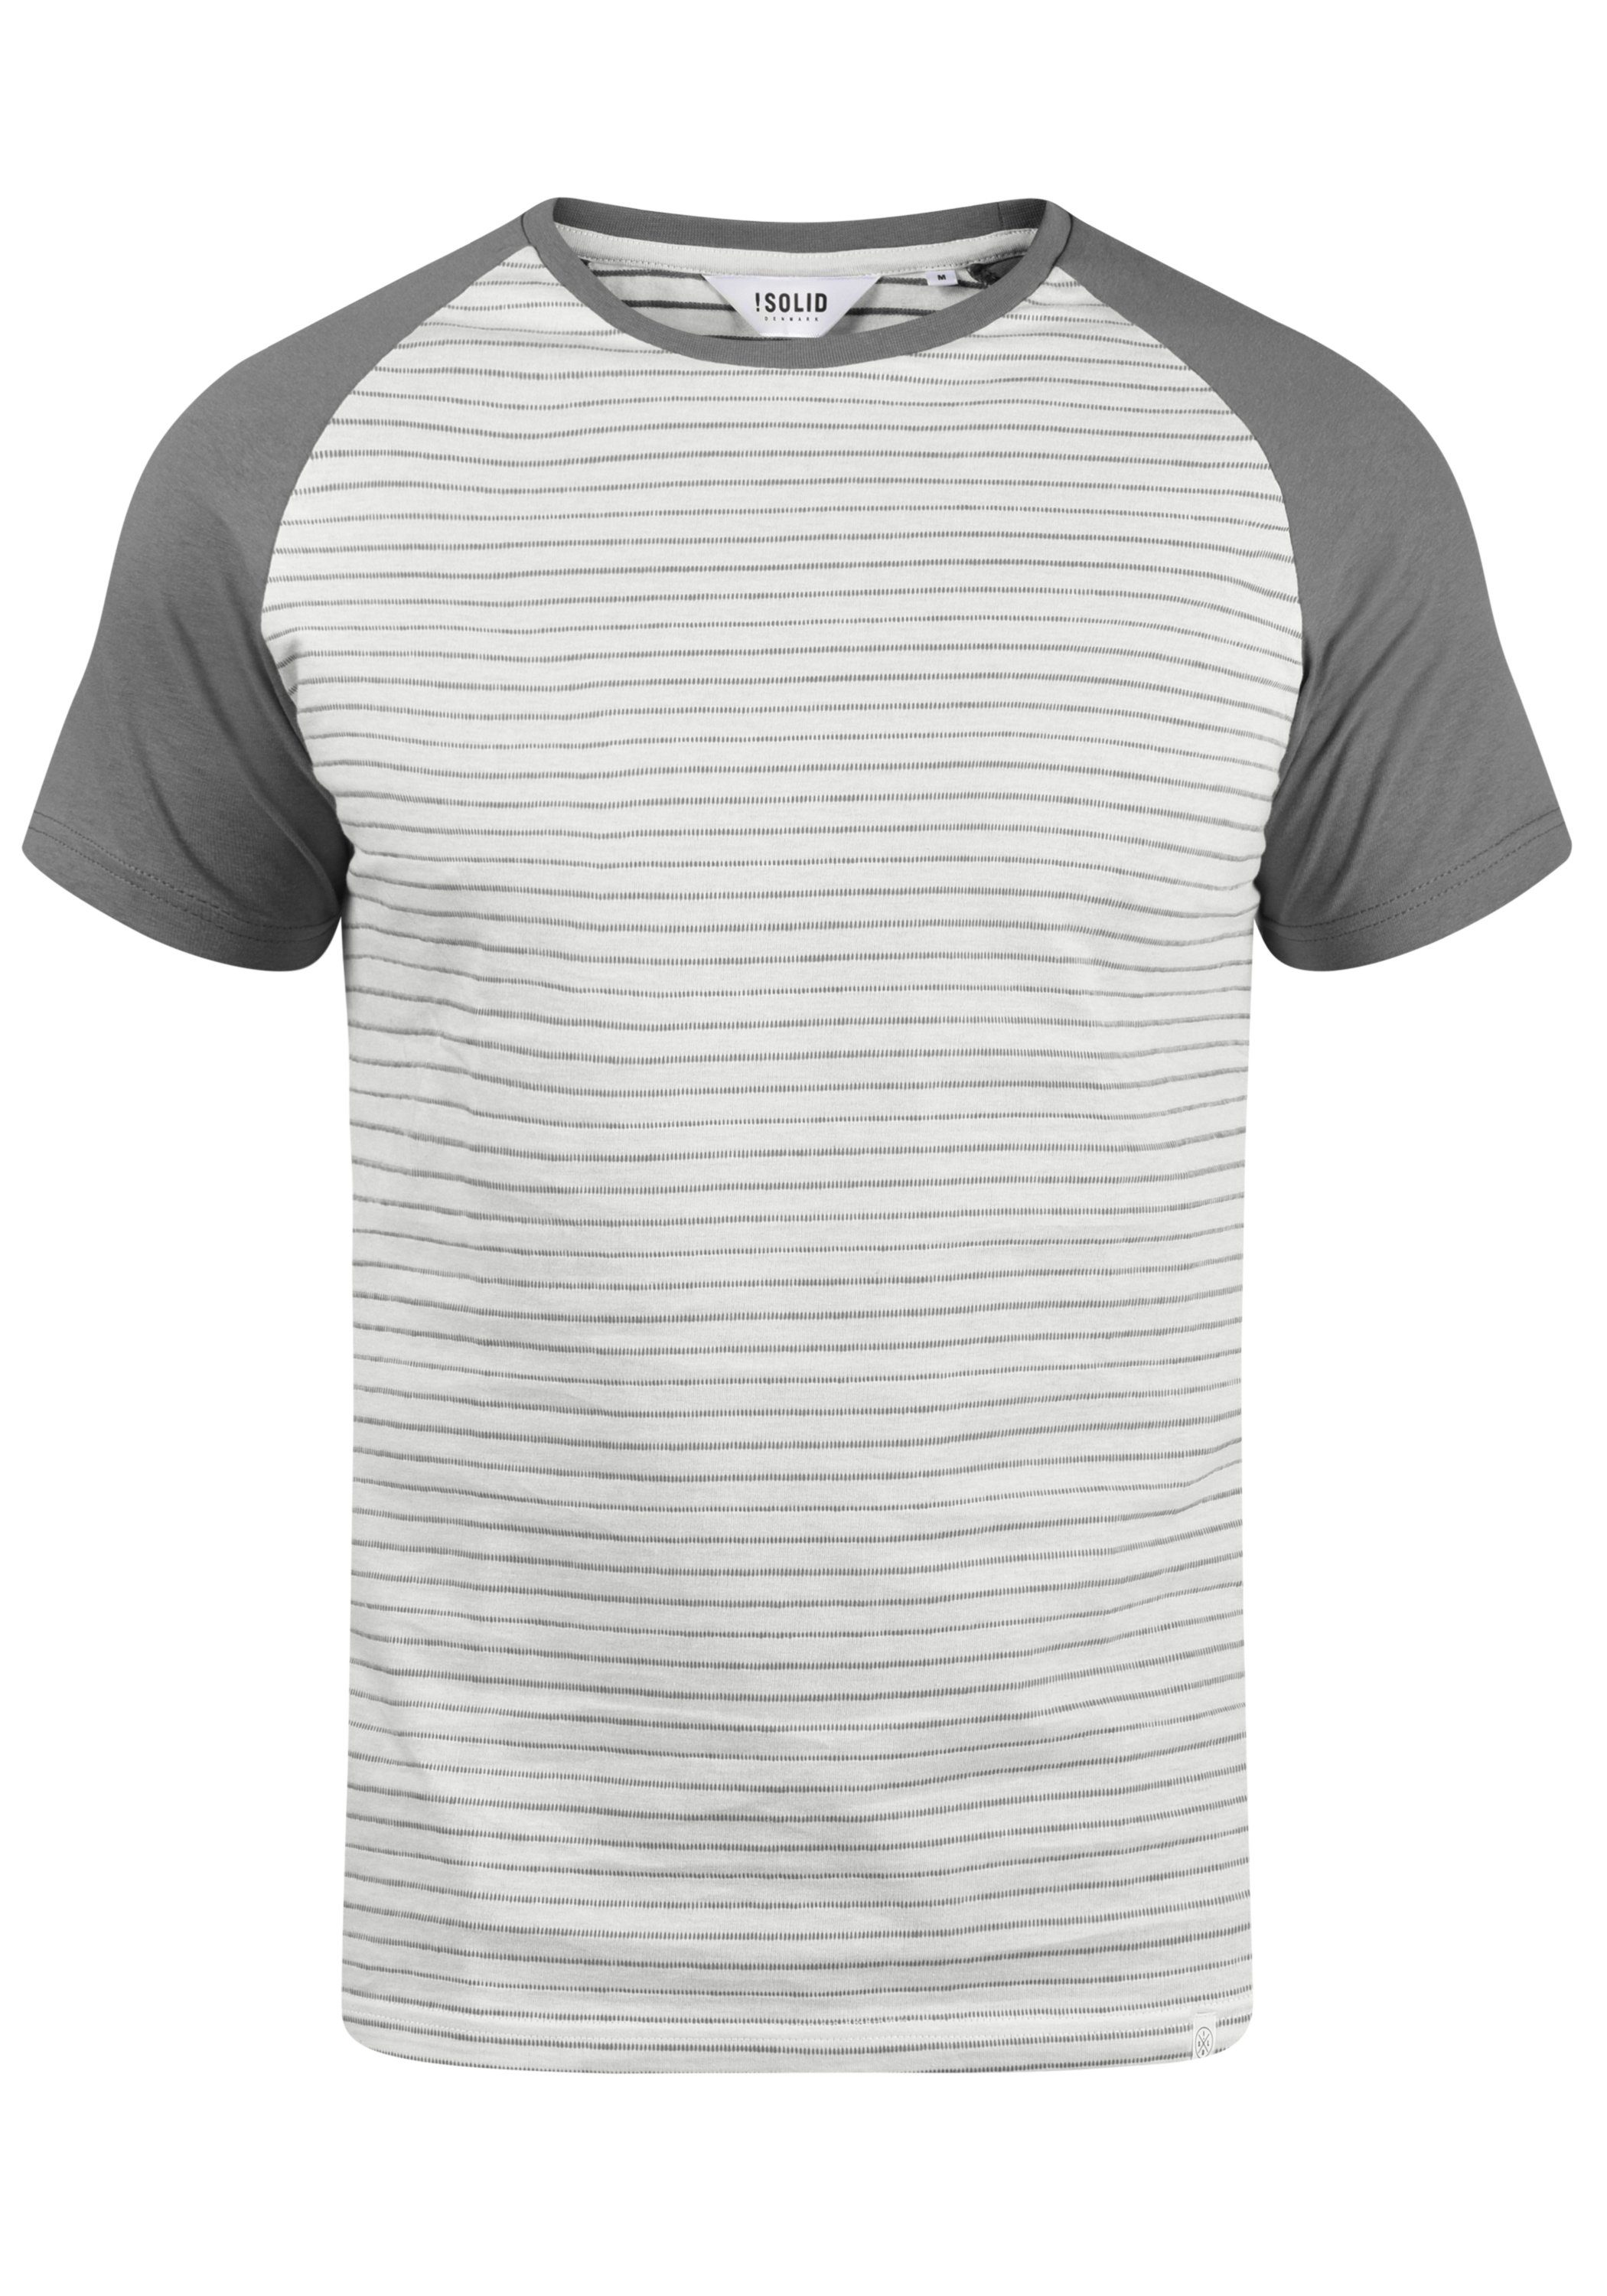 (2842) Rundhalsshirt Grey !Solid Mid SDSten T-Shirt